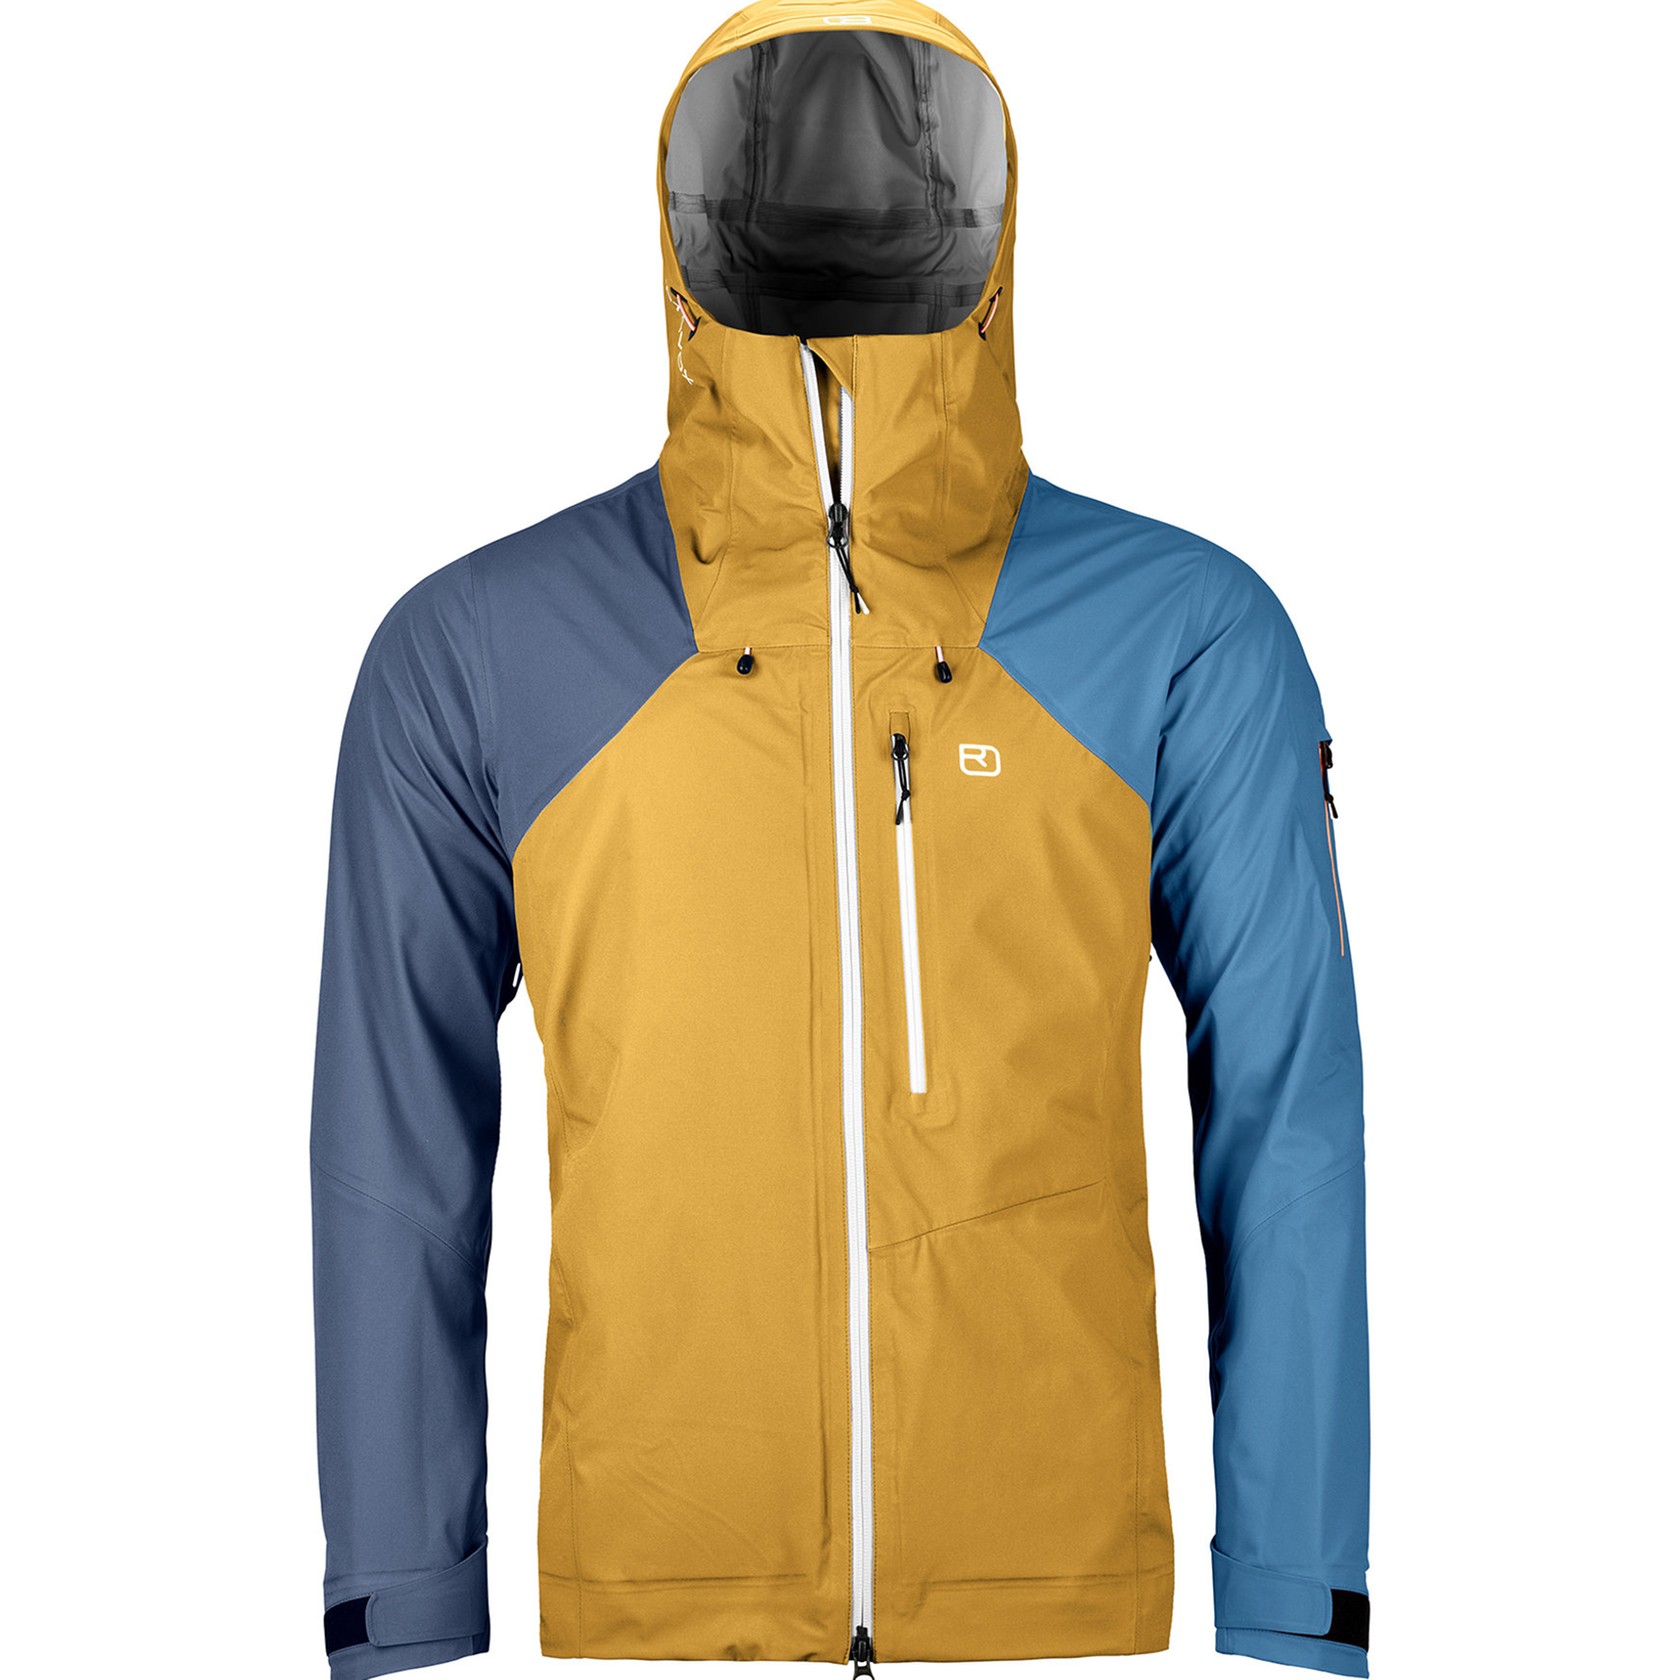 Ortovox Ortler - giacca con cappuccio sci alpinismo - uomo